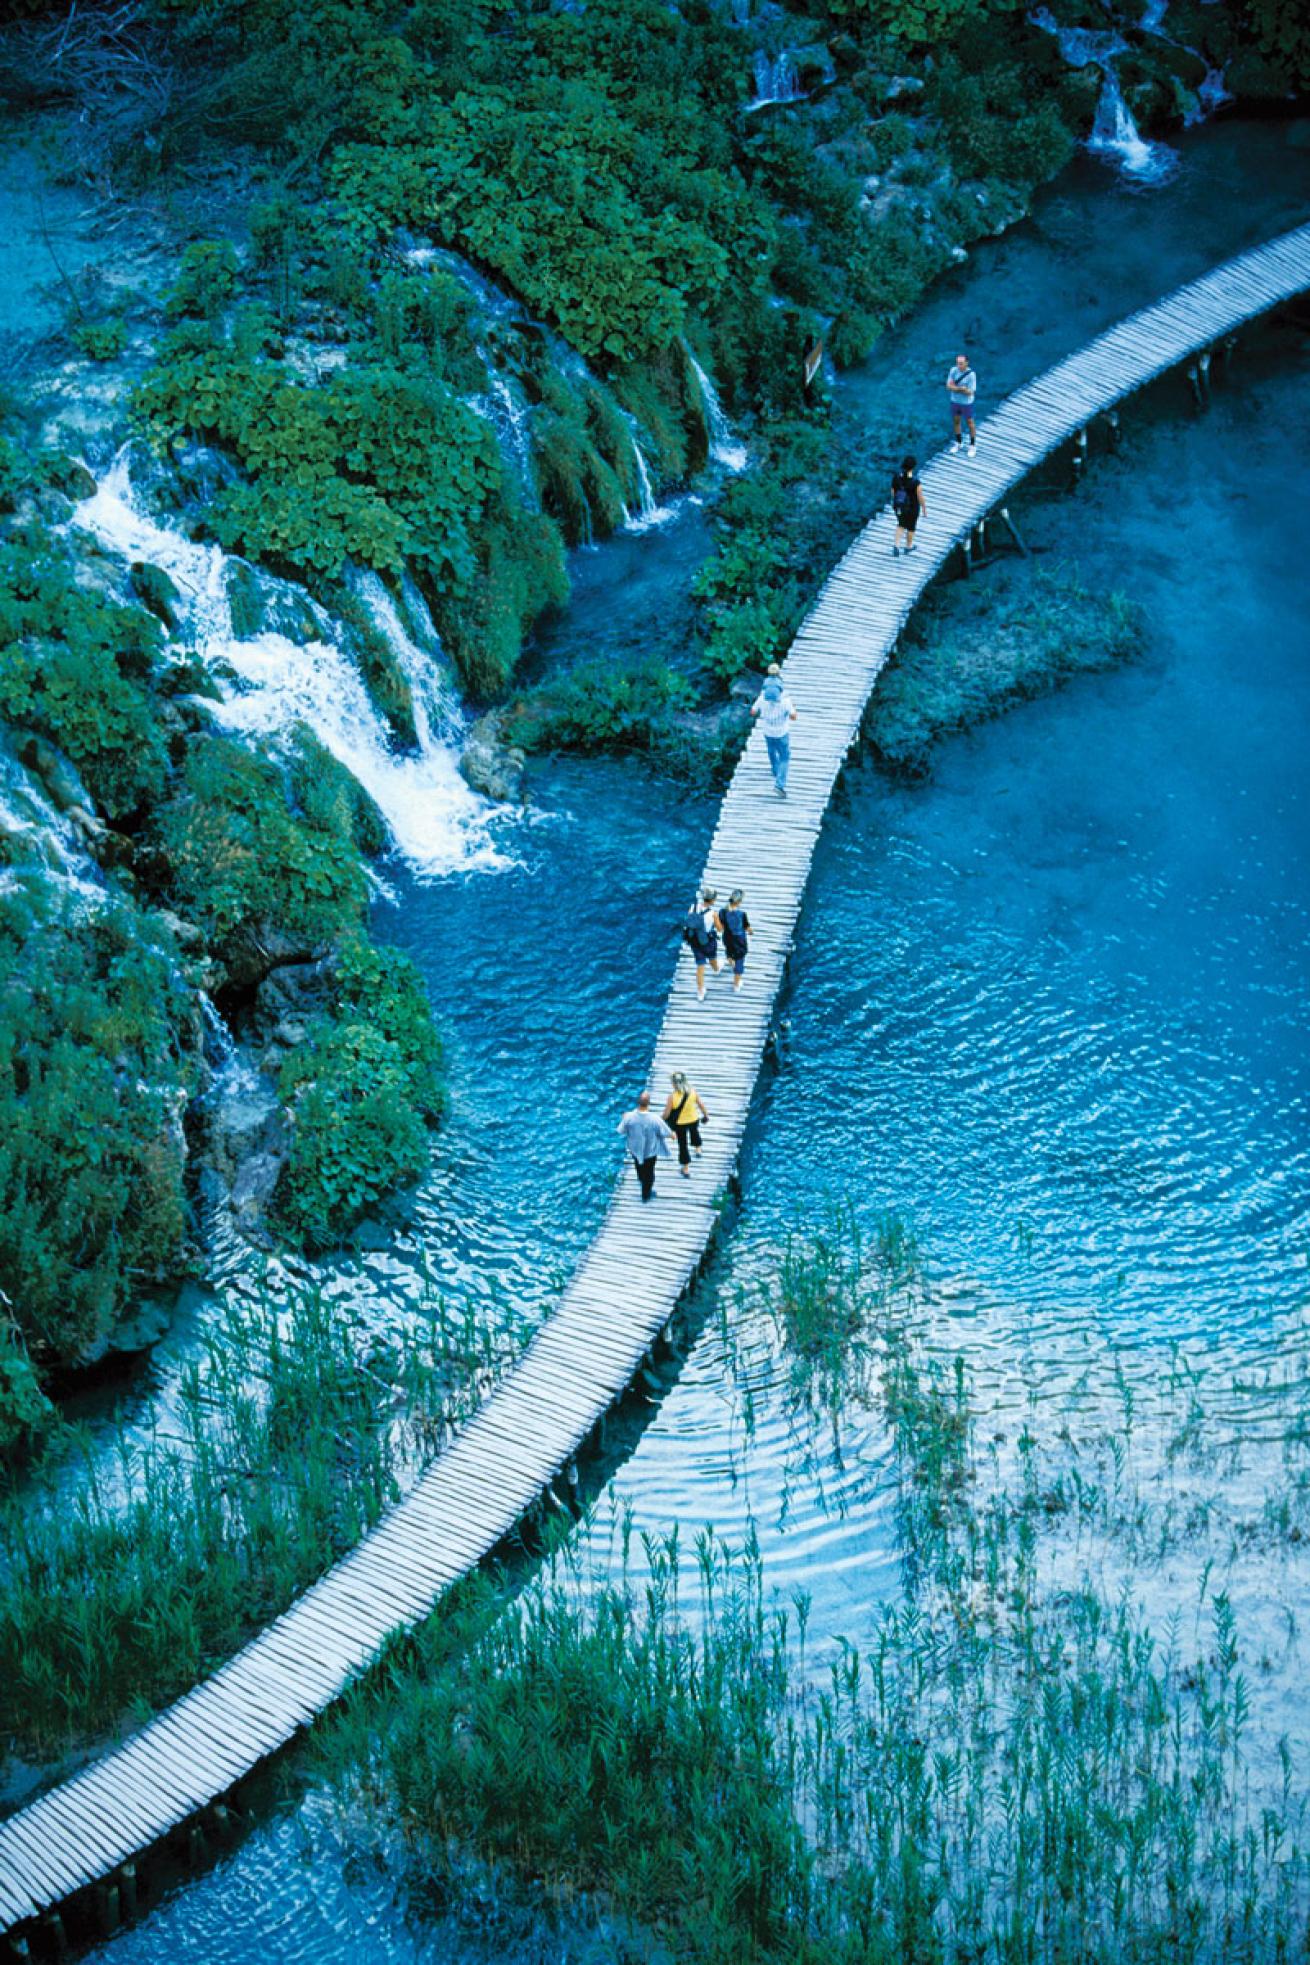 Boardwalk in Plitvice Lakes National Park